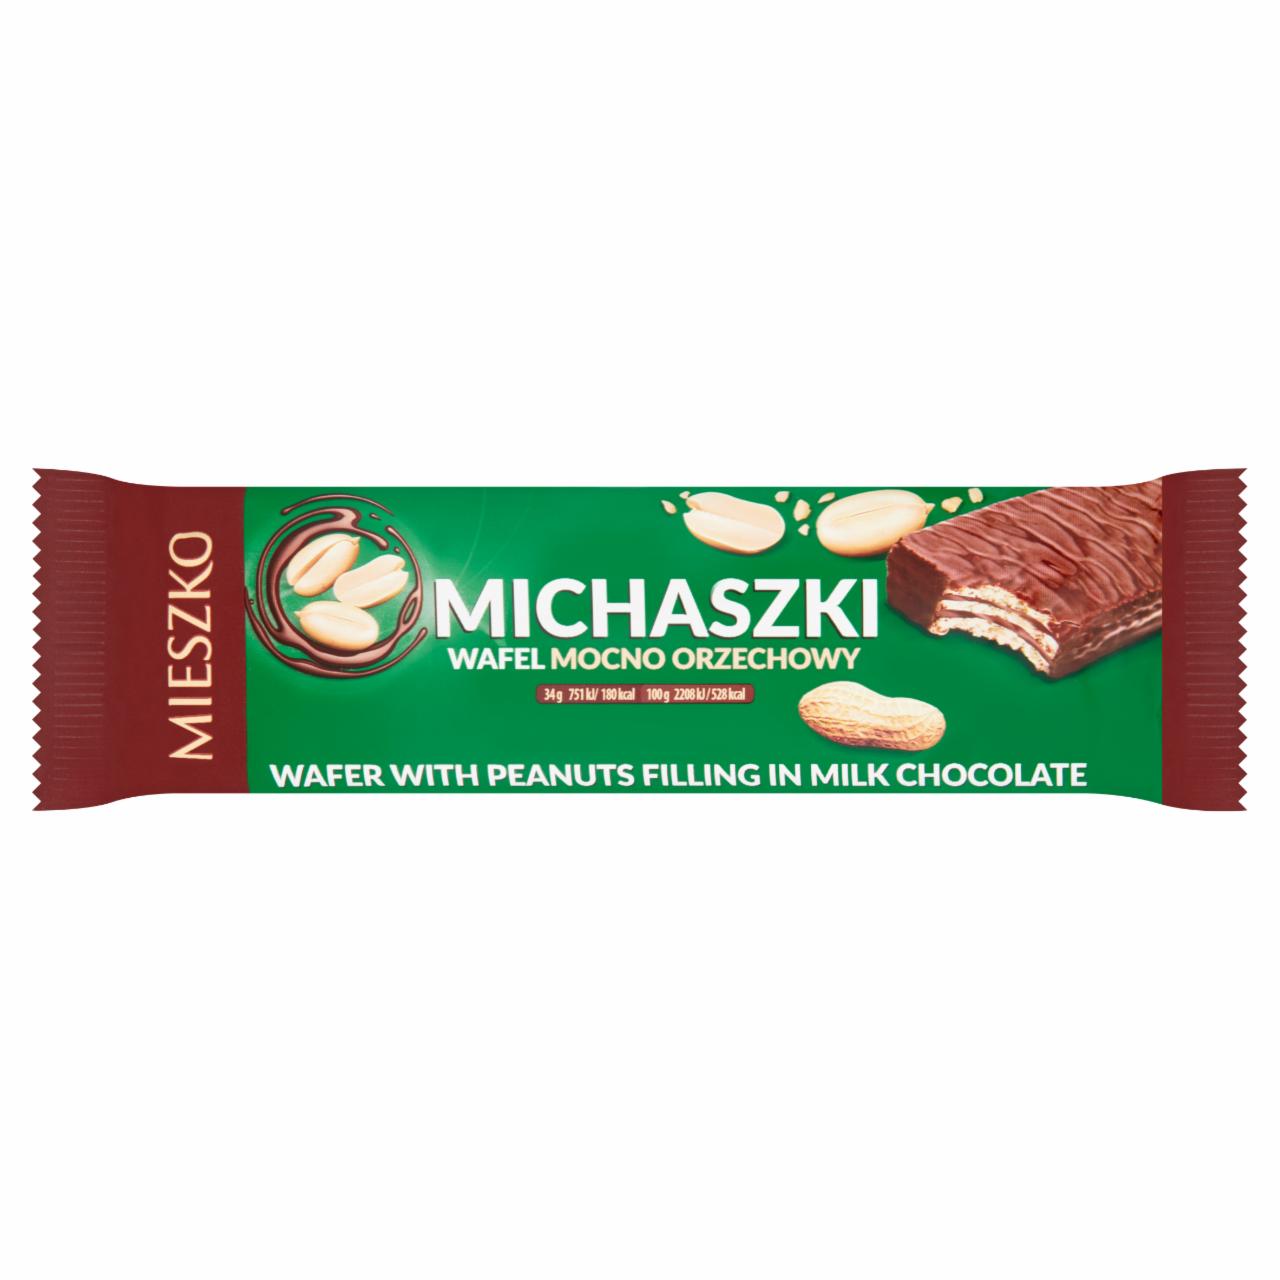 Фото - конфеты подарочный набор Микс Хаус Michaszki Cukierki mix Mieszko